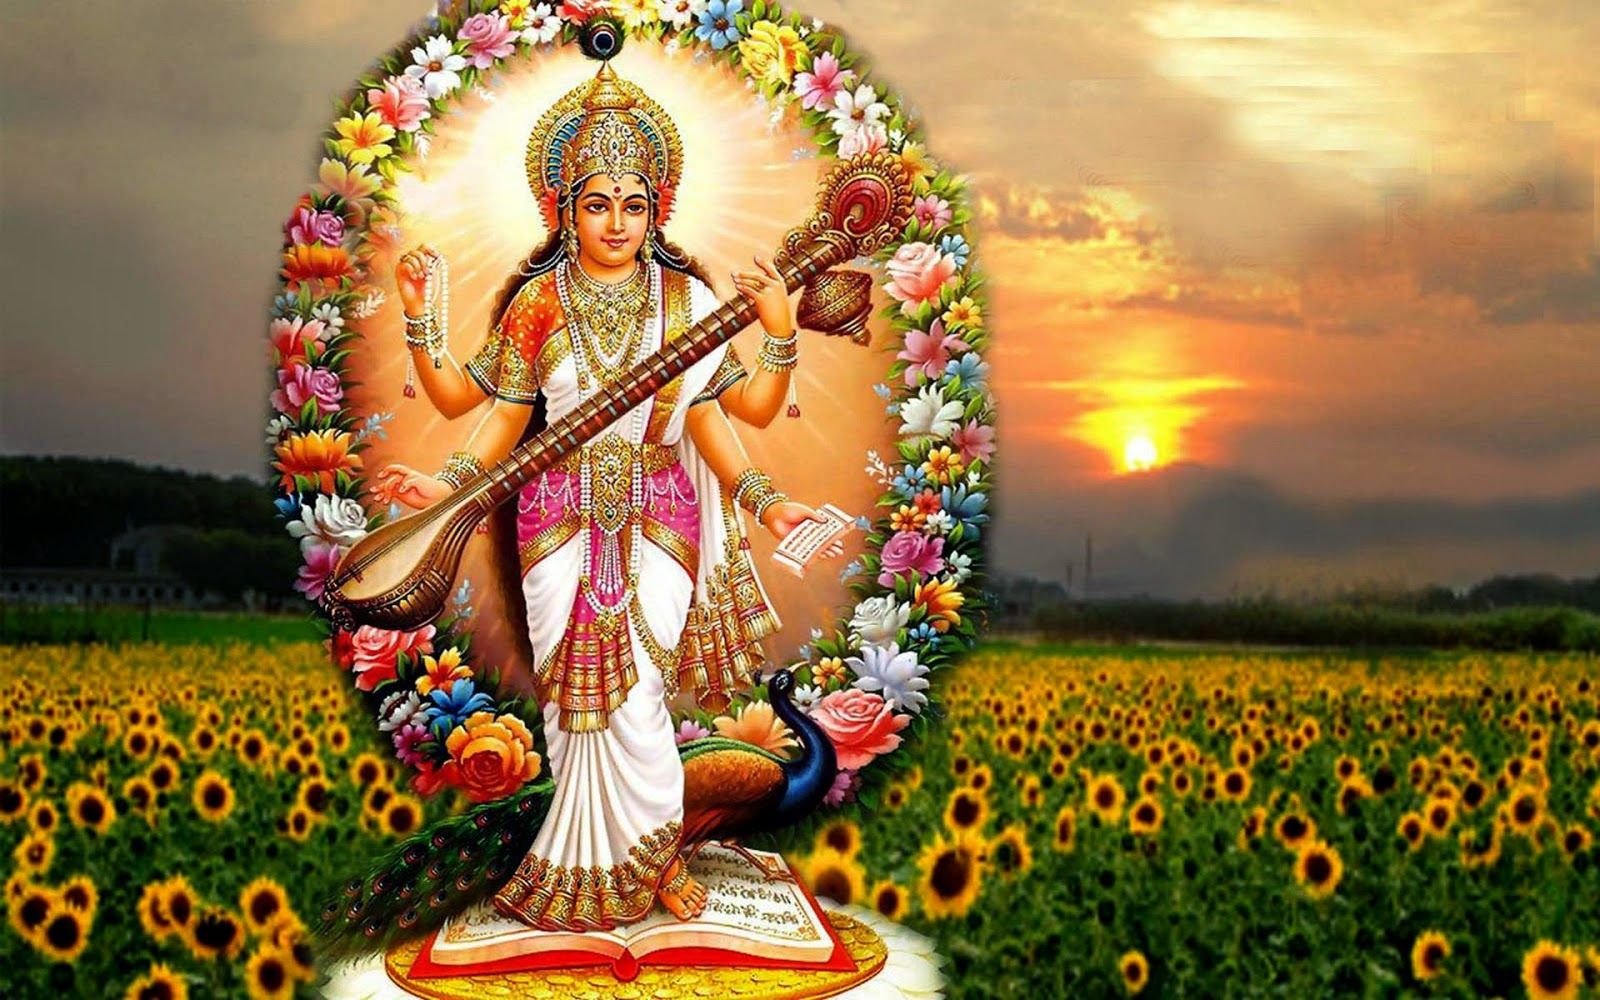 Hindu God - Basant Panchami Hd Images Download - 1600x1000 Wallpaper -  